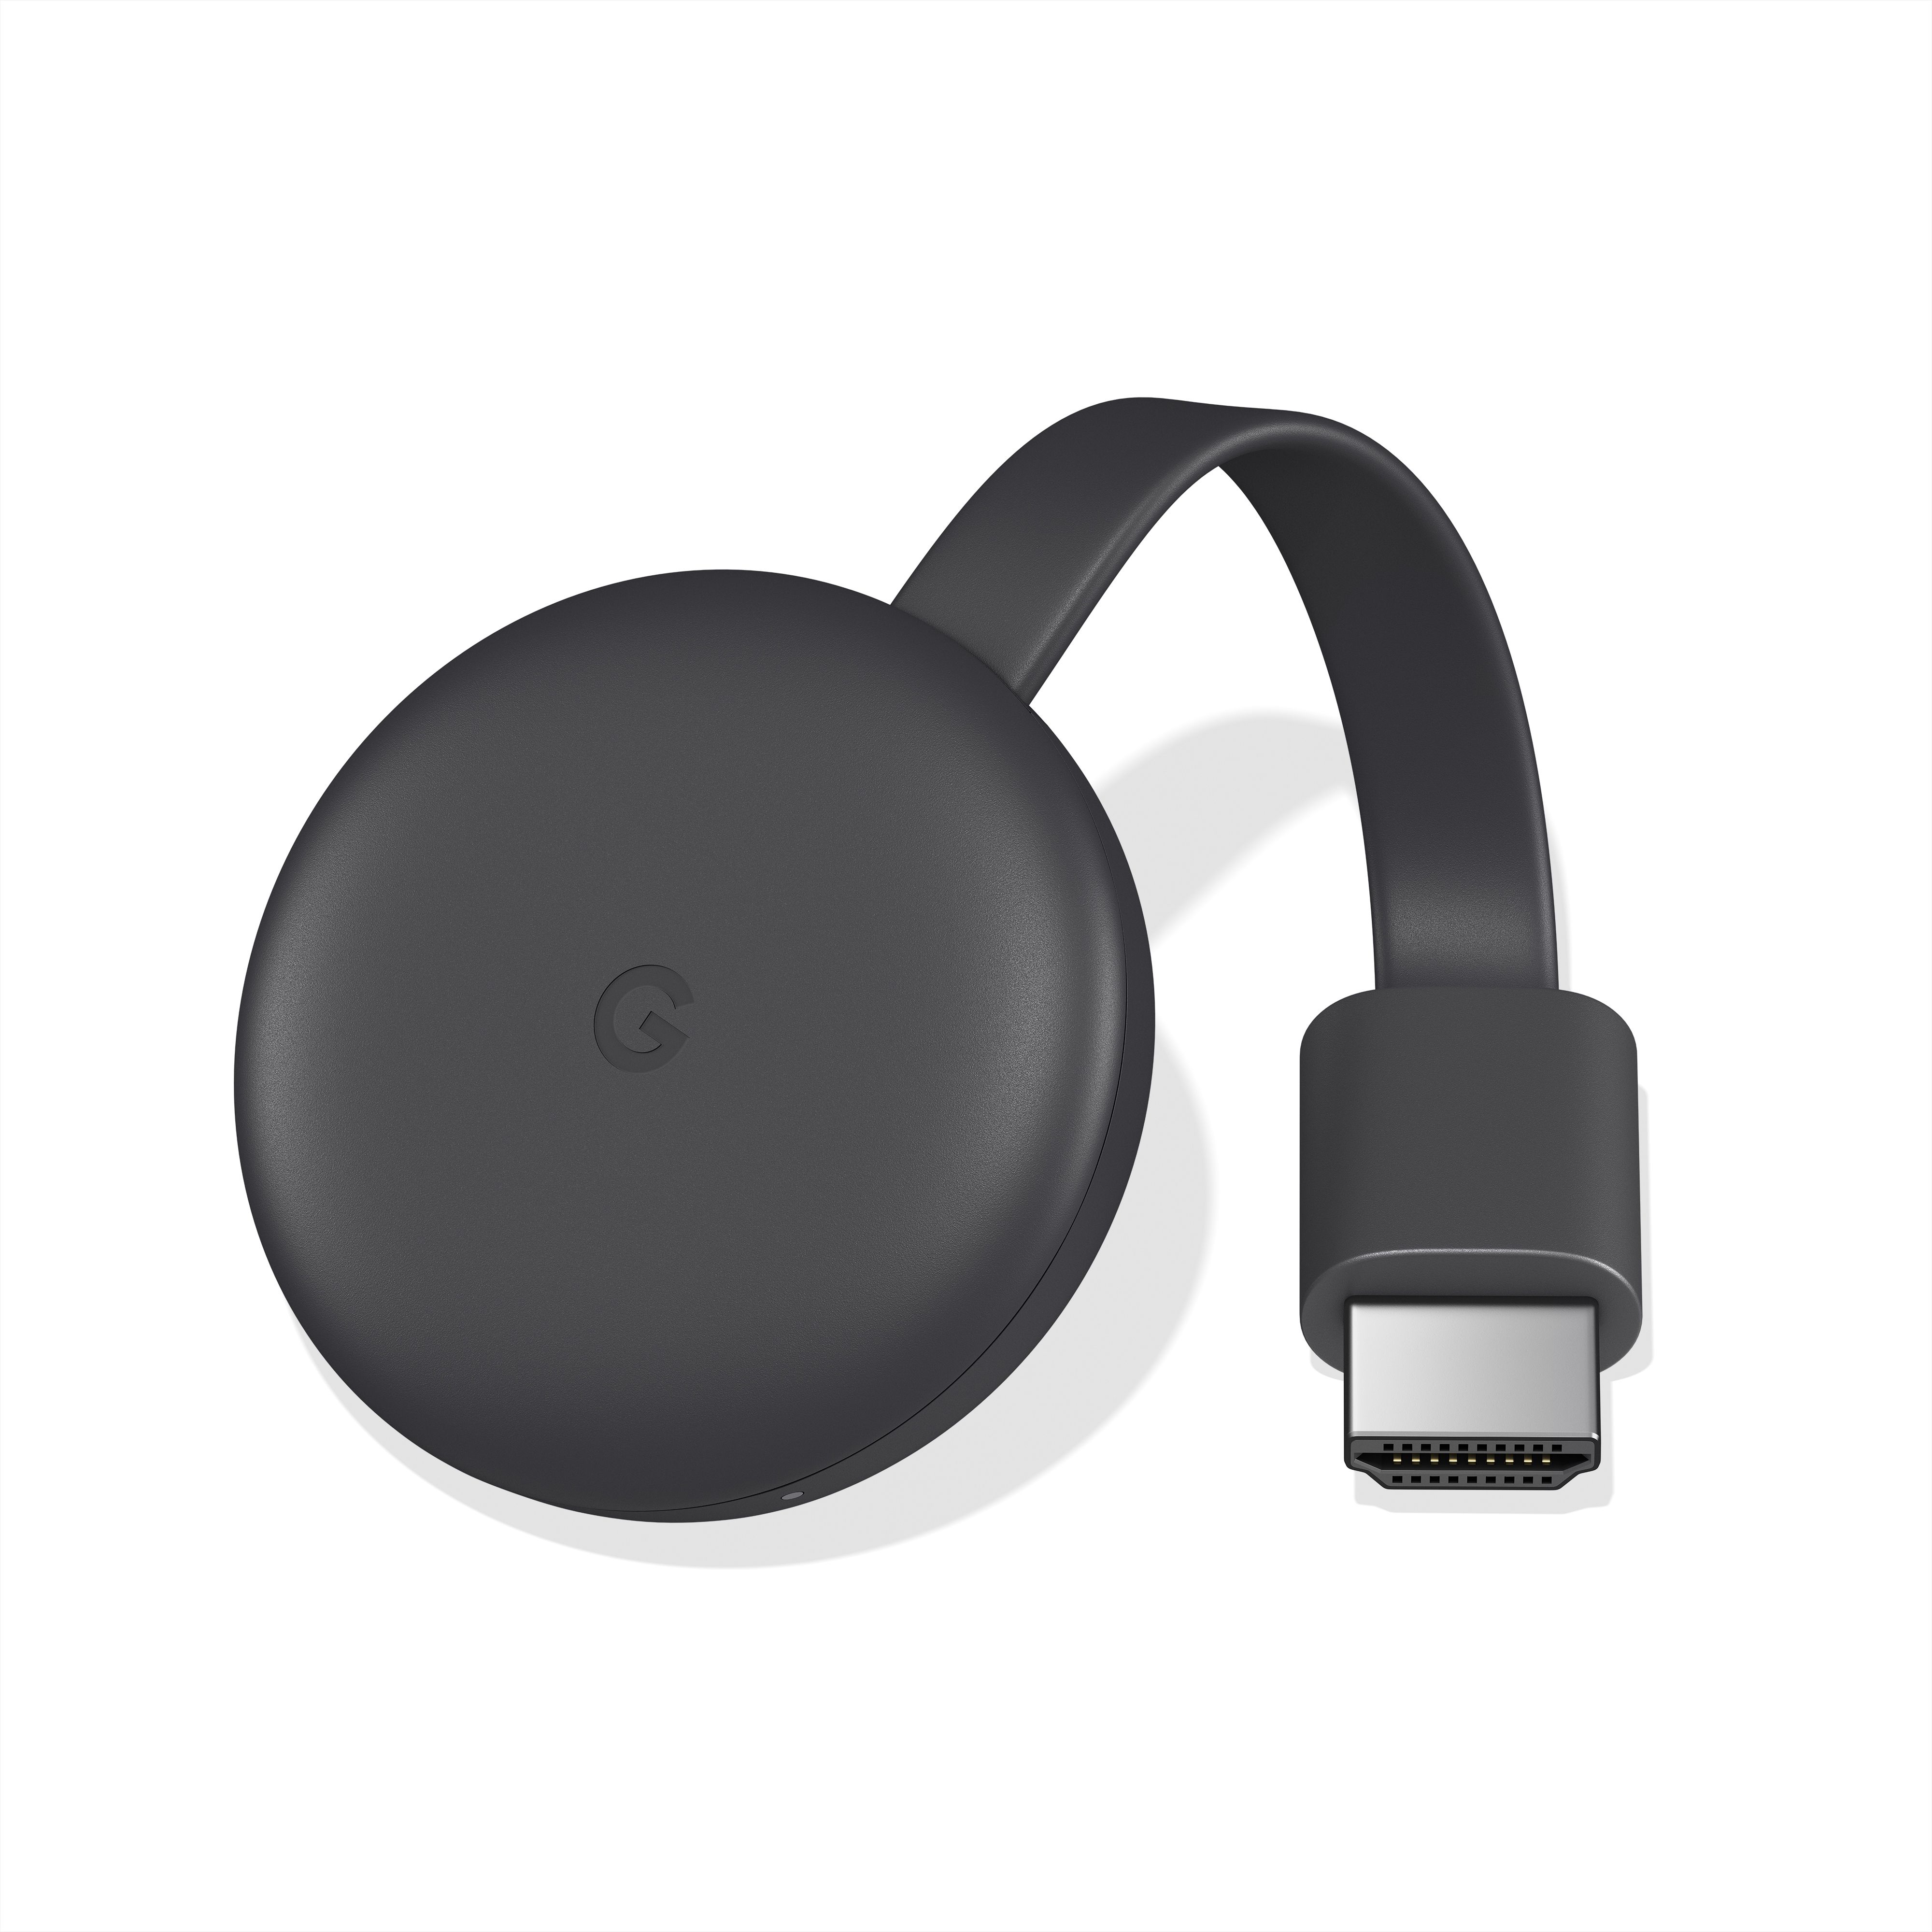 Google Chromecast Black | at B&Q